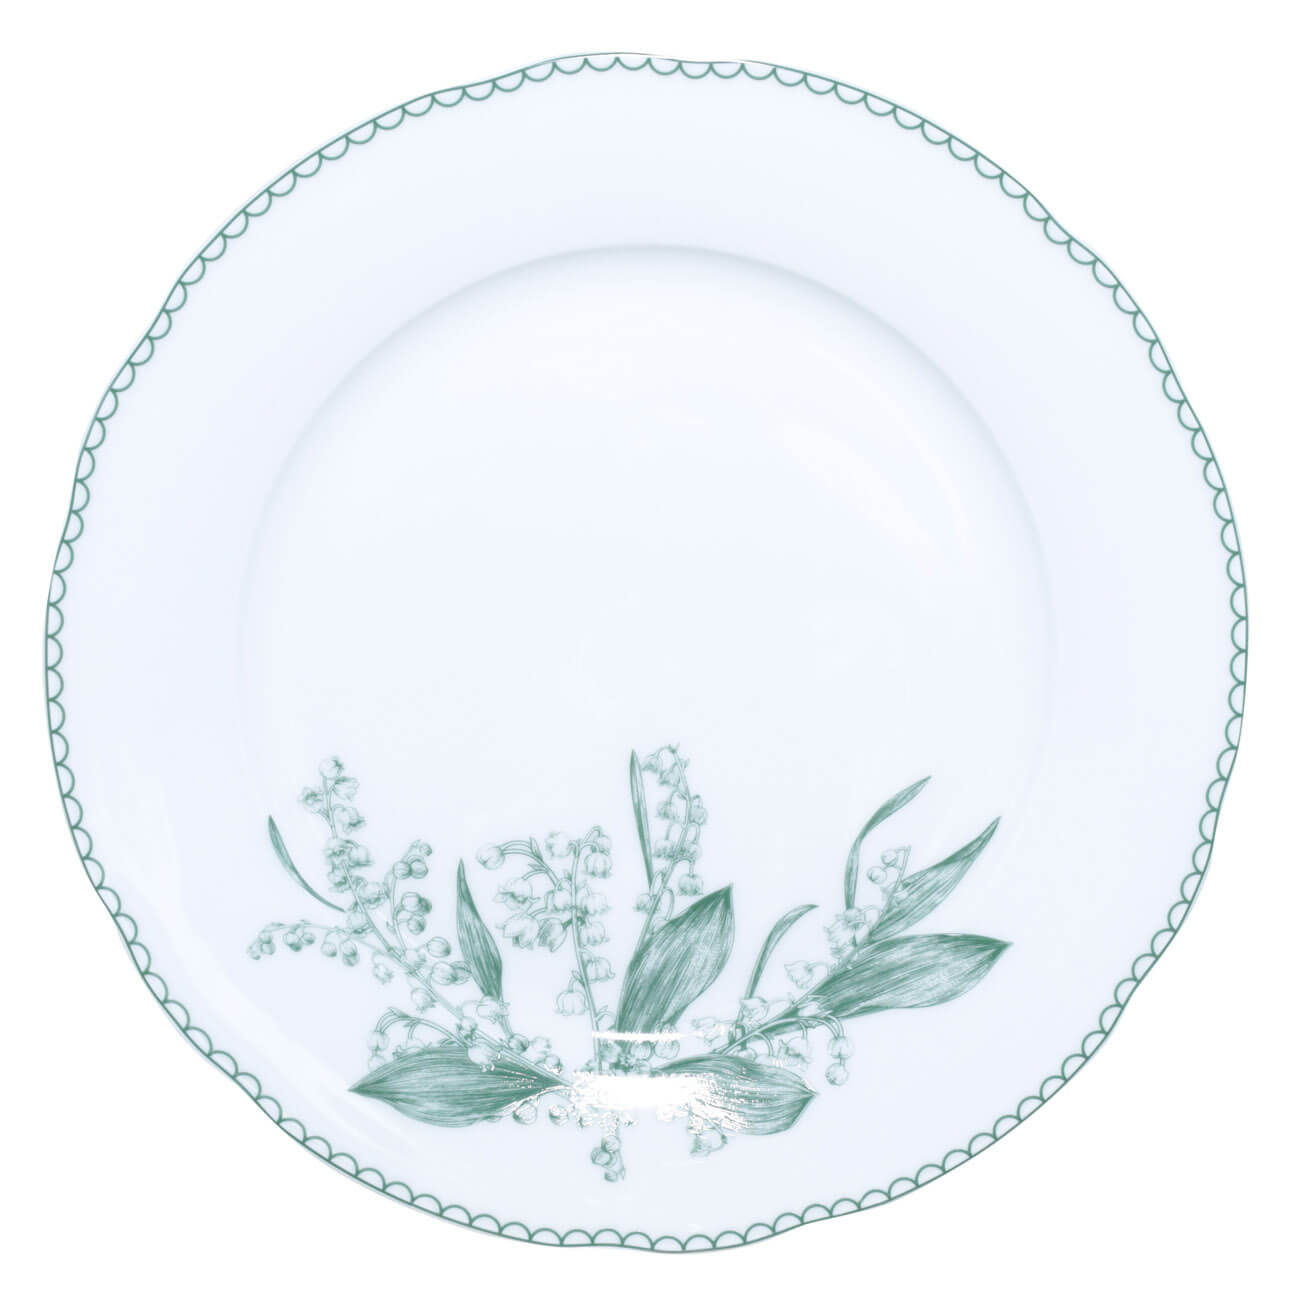 Тарелка обеденная, 27 см, фарфор F, белая, Весенние ландыши, May-lily тарелка керамическая обеденная доляна пастель d 27 см голубой